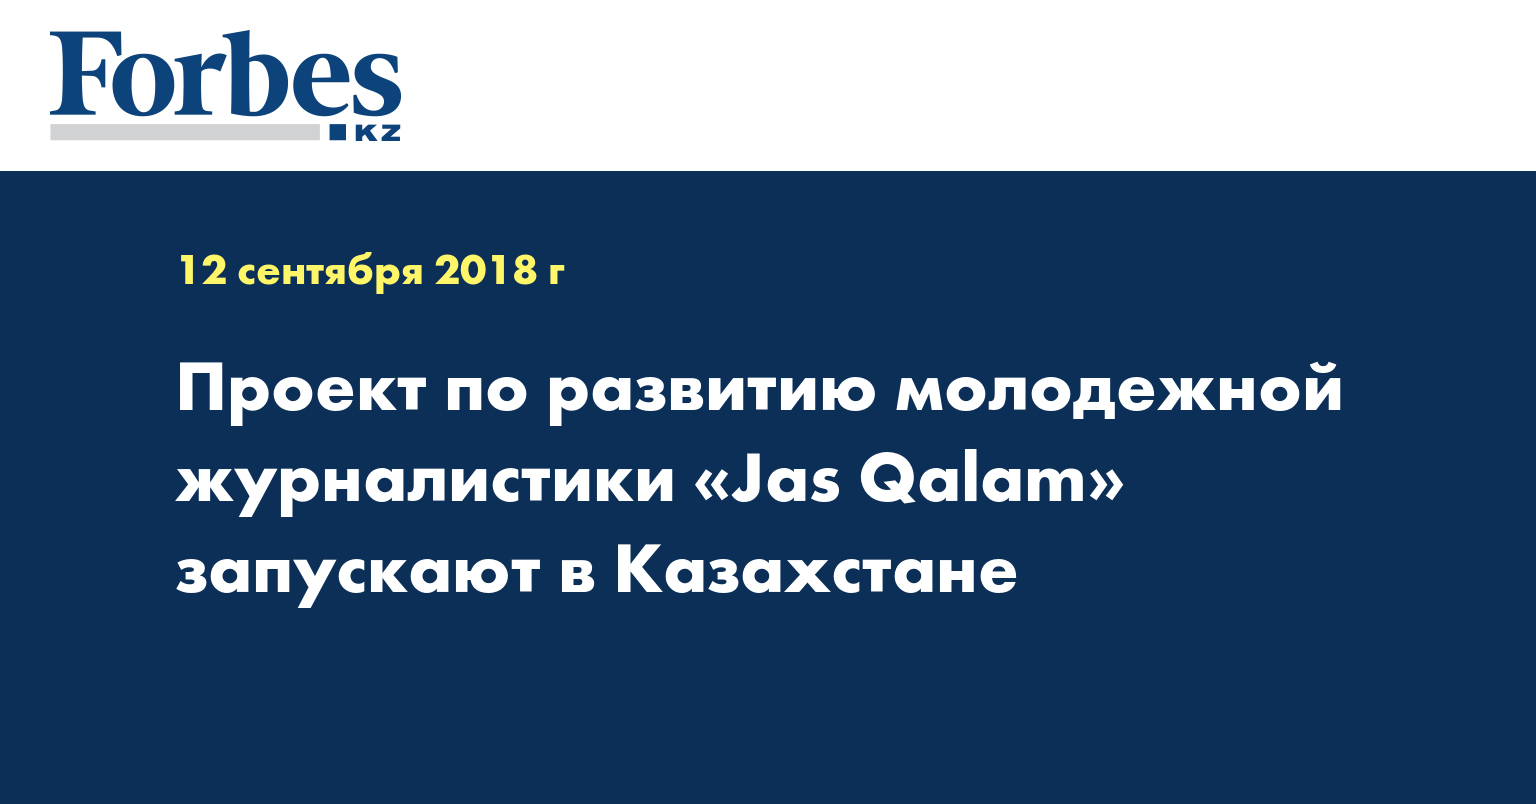 Проект по развитию молодежной журналистики «Jas Qalam» запускают в Казахстане